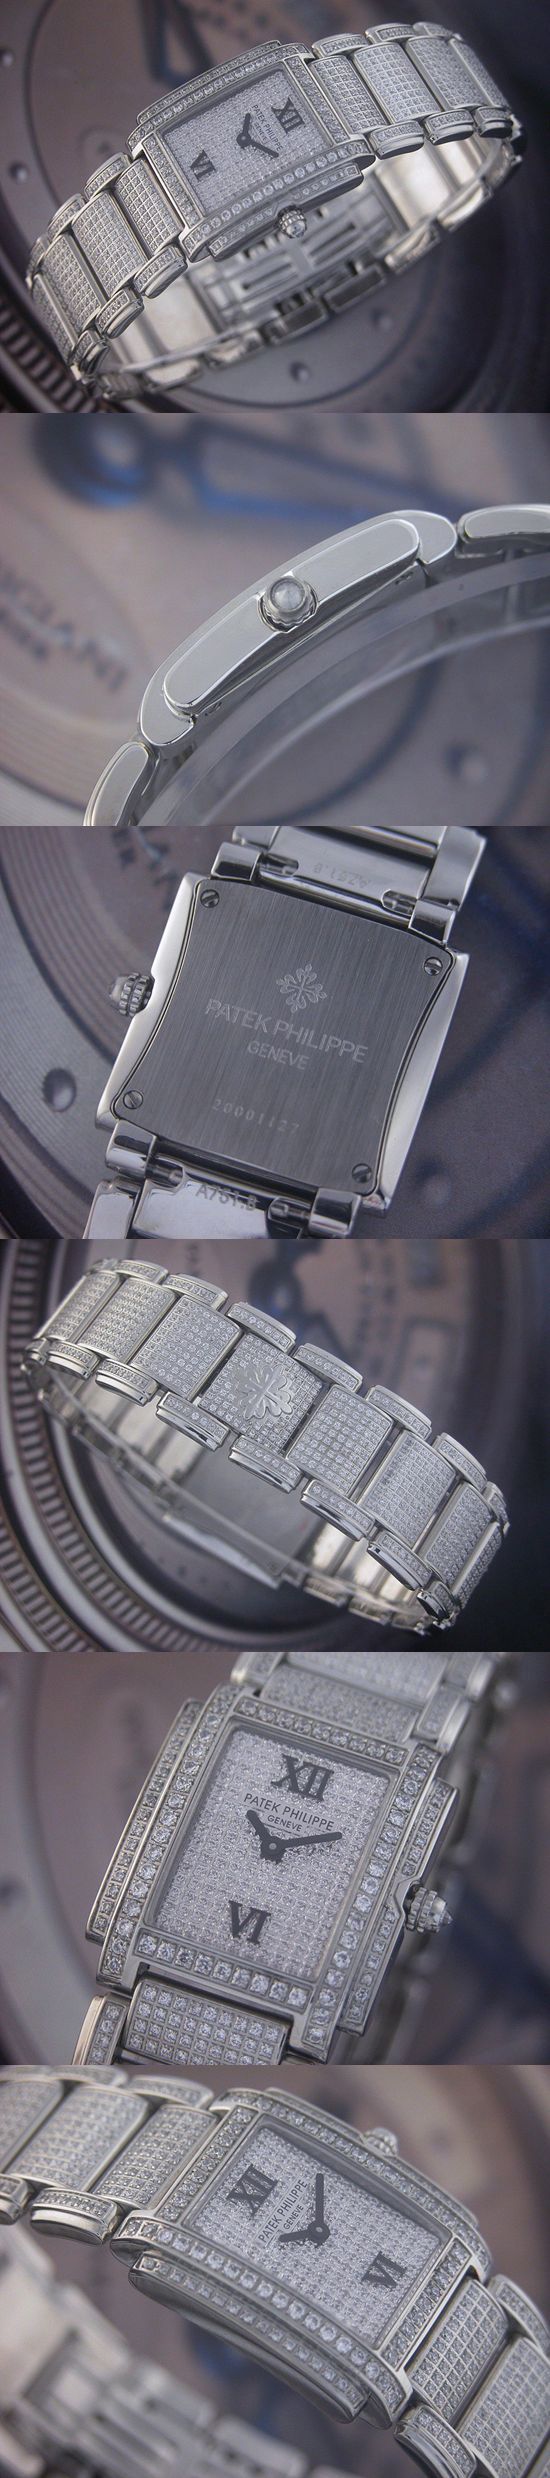 おしゃれなブランド時計がパテック フィリップ-トゥエンティ-4-PATEK PHILIPPE-4910/51G-女性用を提供します.